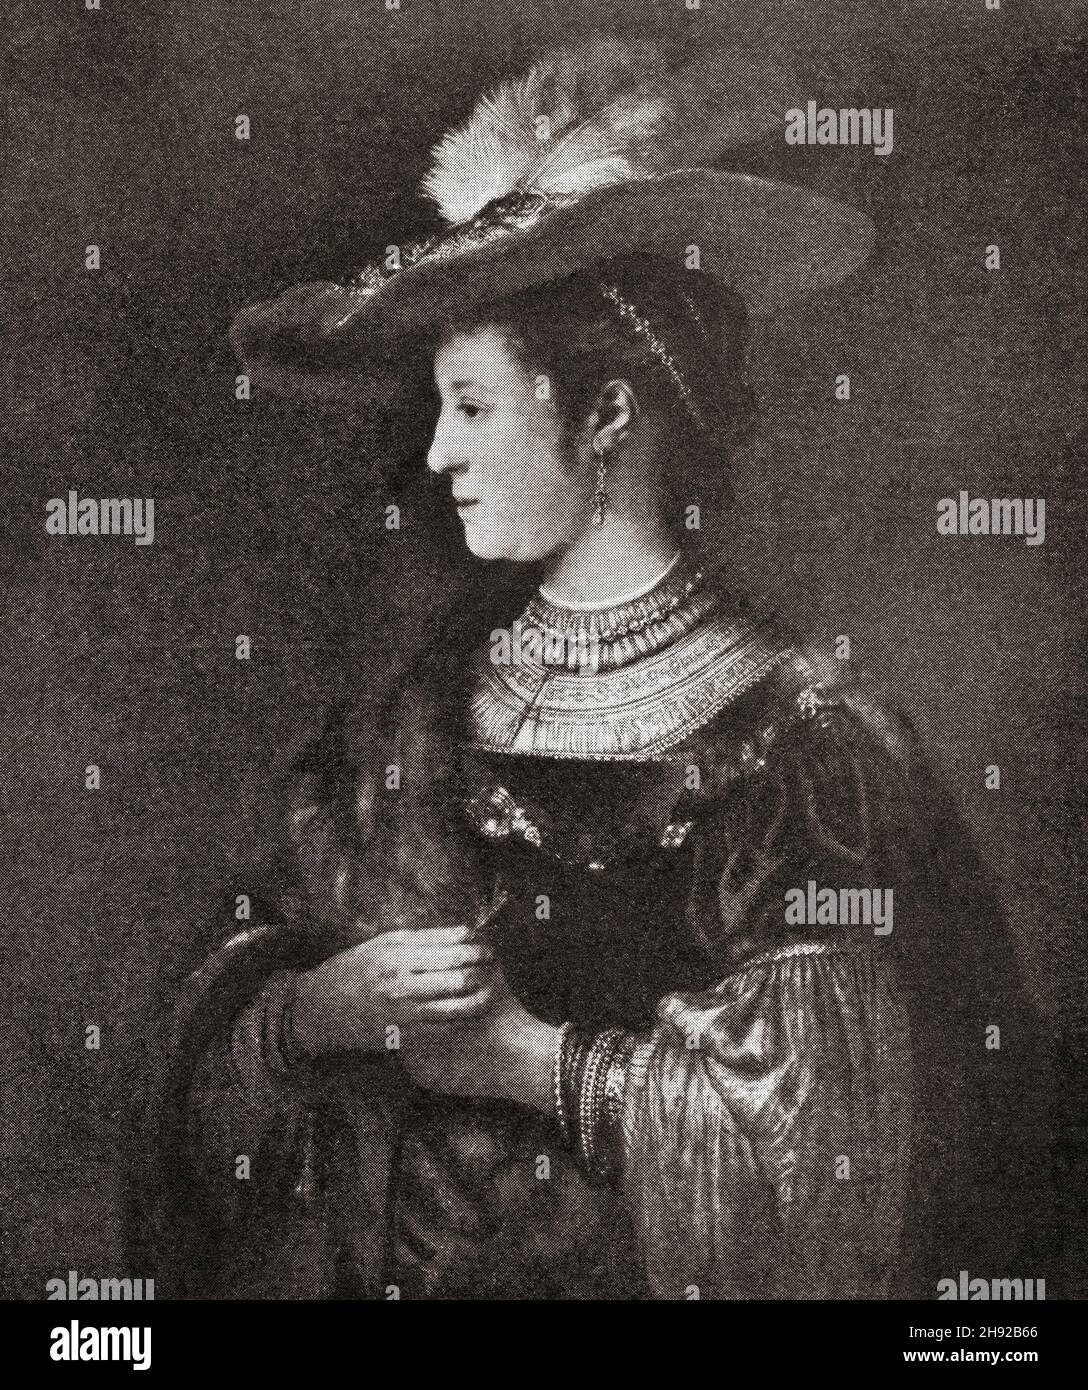 Saskia van Uylenburgh, 1612 – 1642.Femme du peintre Rembrandt van Rijn.Du monde et de sa femme, publié en 1906 Banque D'Images